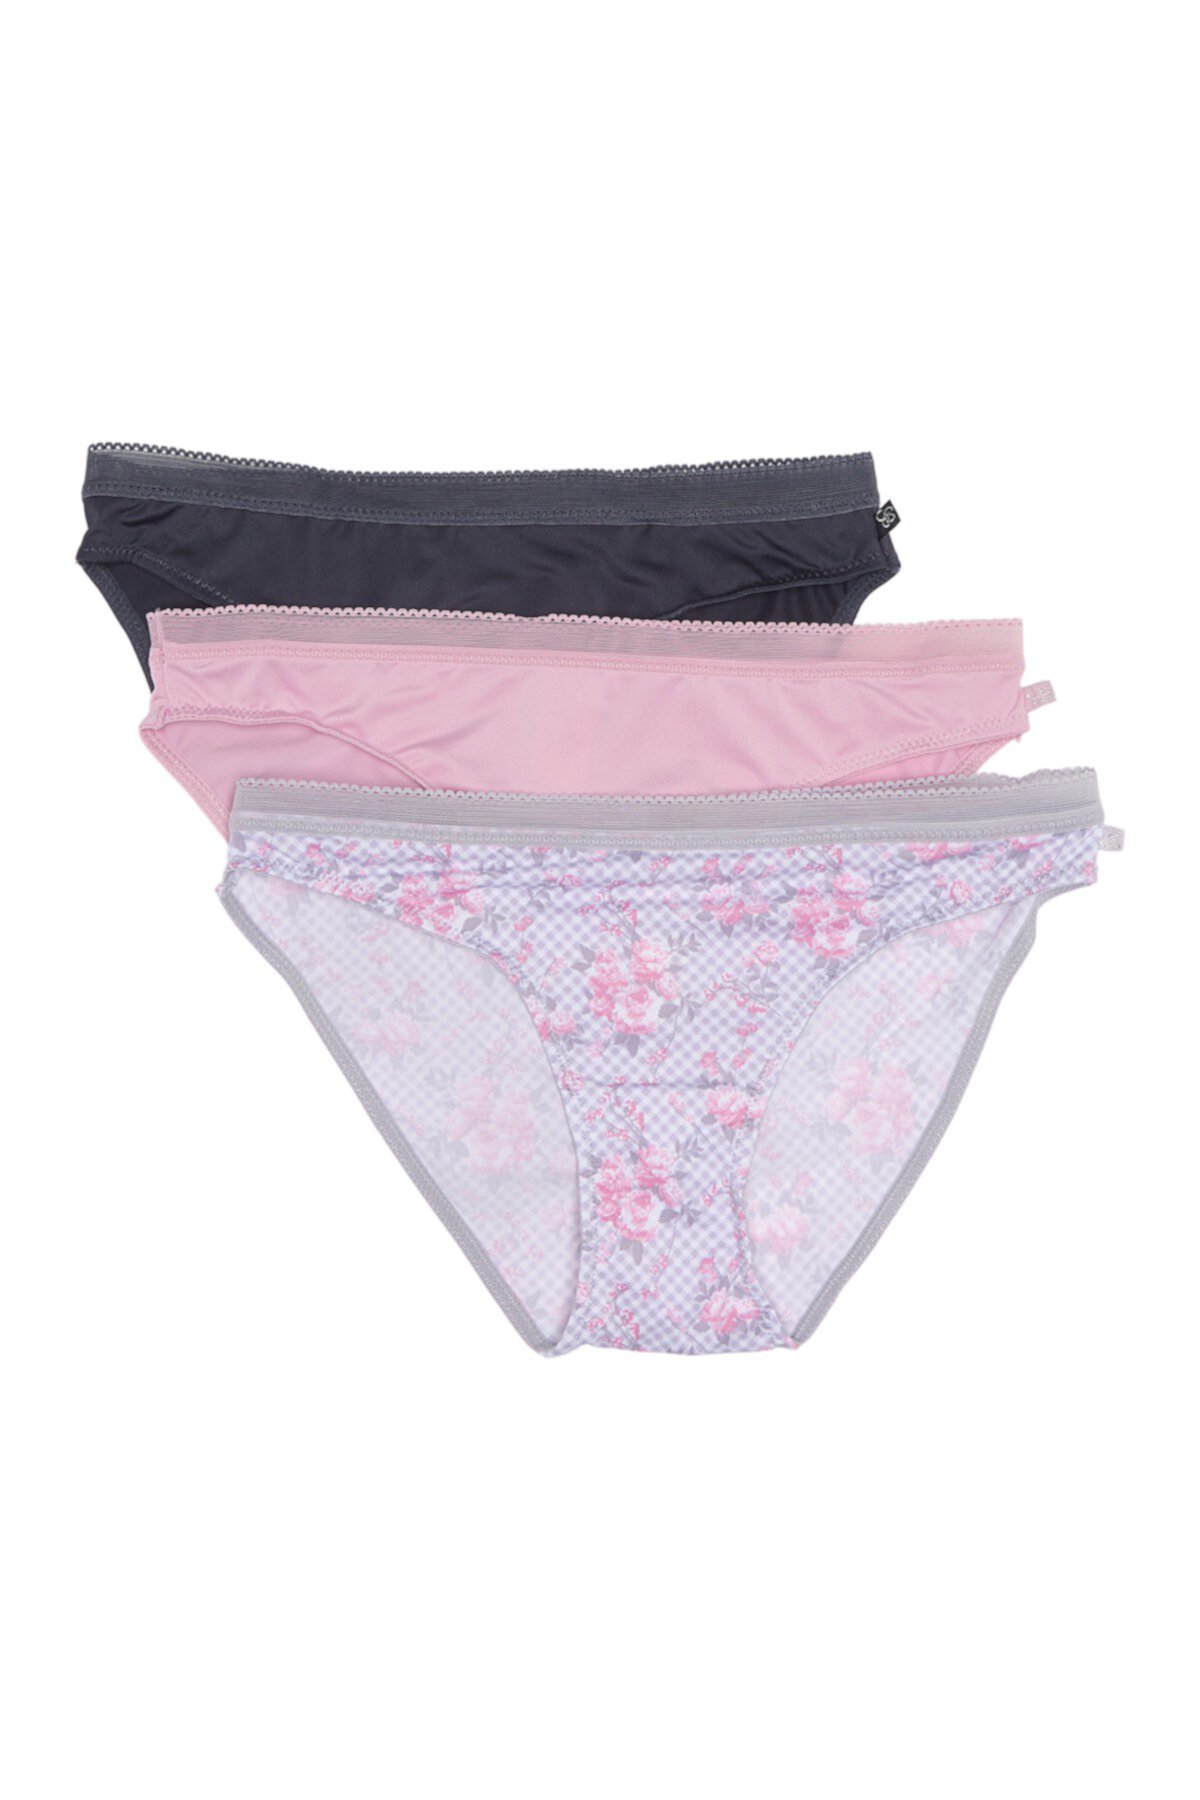 Micro Bikini Panties - Pack of 3 Jessica Simpson